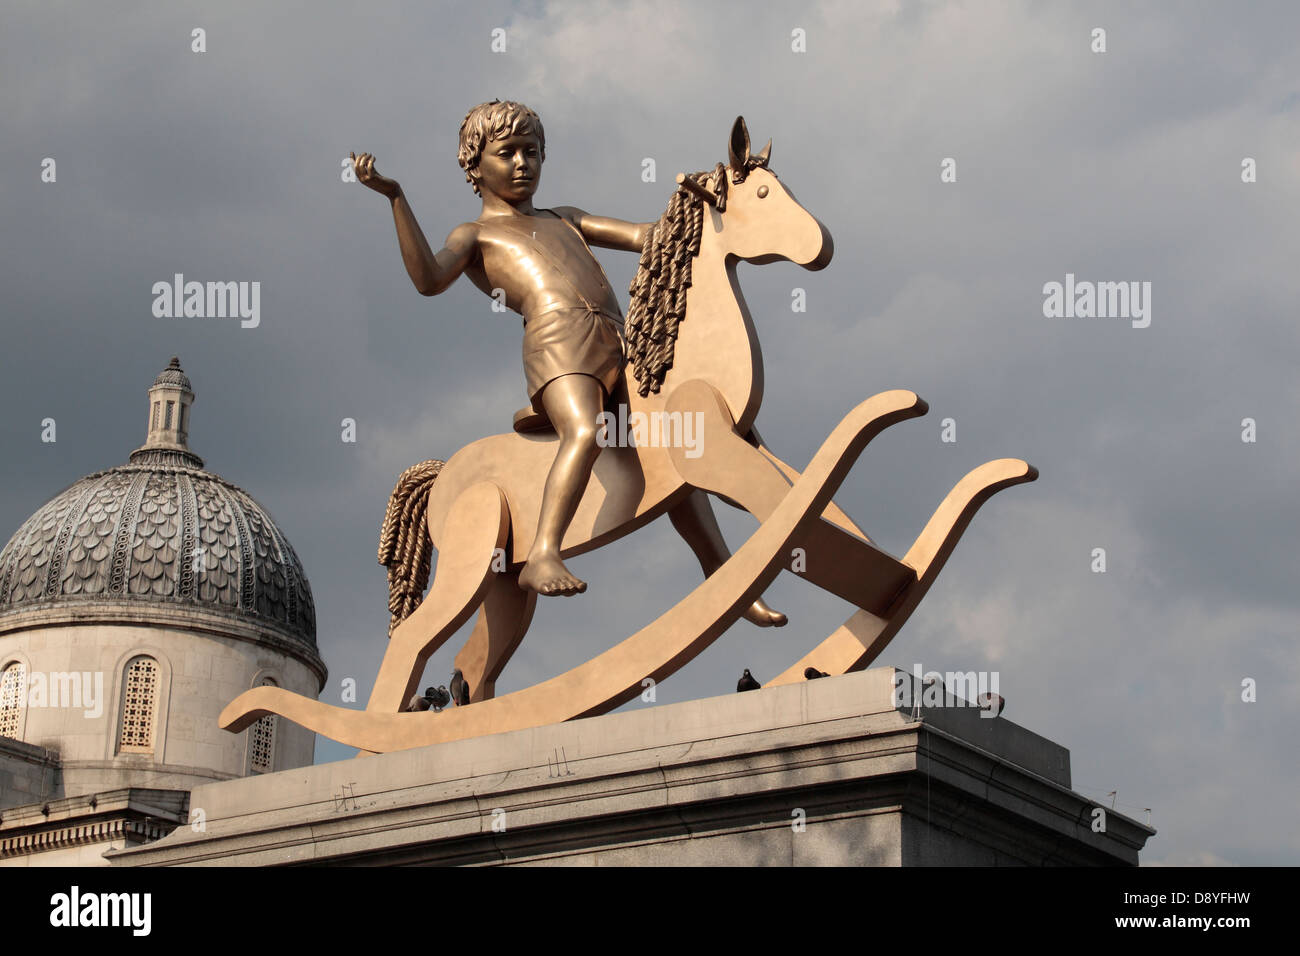 "Machtlose Strukturen, Abb. 101" eine Bronze-Skulptur eines jungen auf einer Schaukel Pferd, vierte Sockel, Trafalgar Square, London, UK. Stockfoto